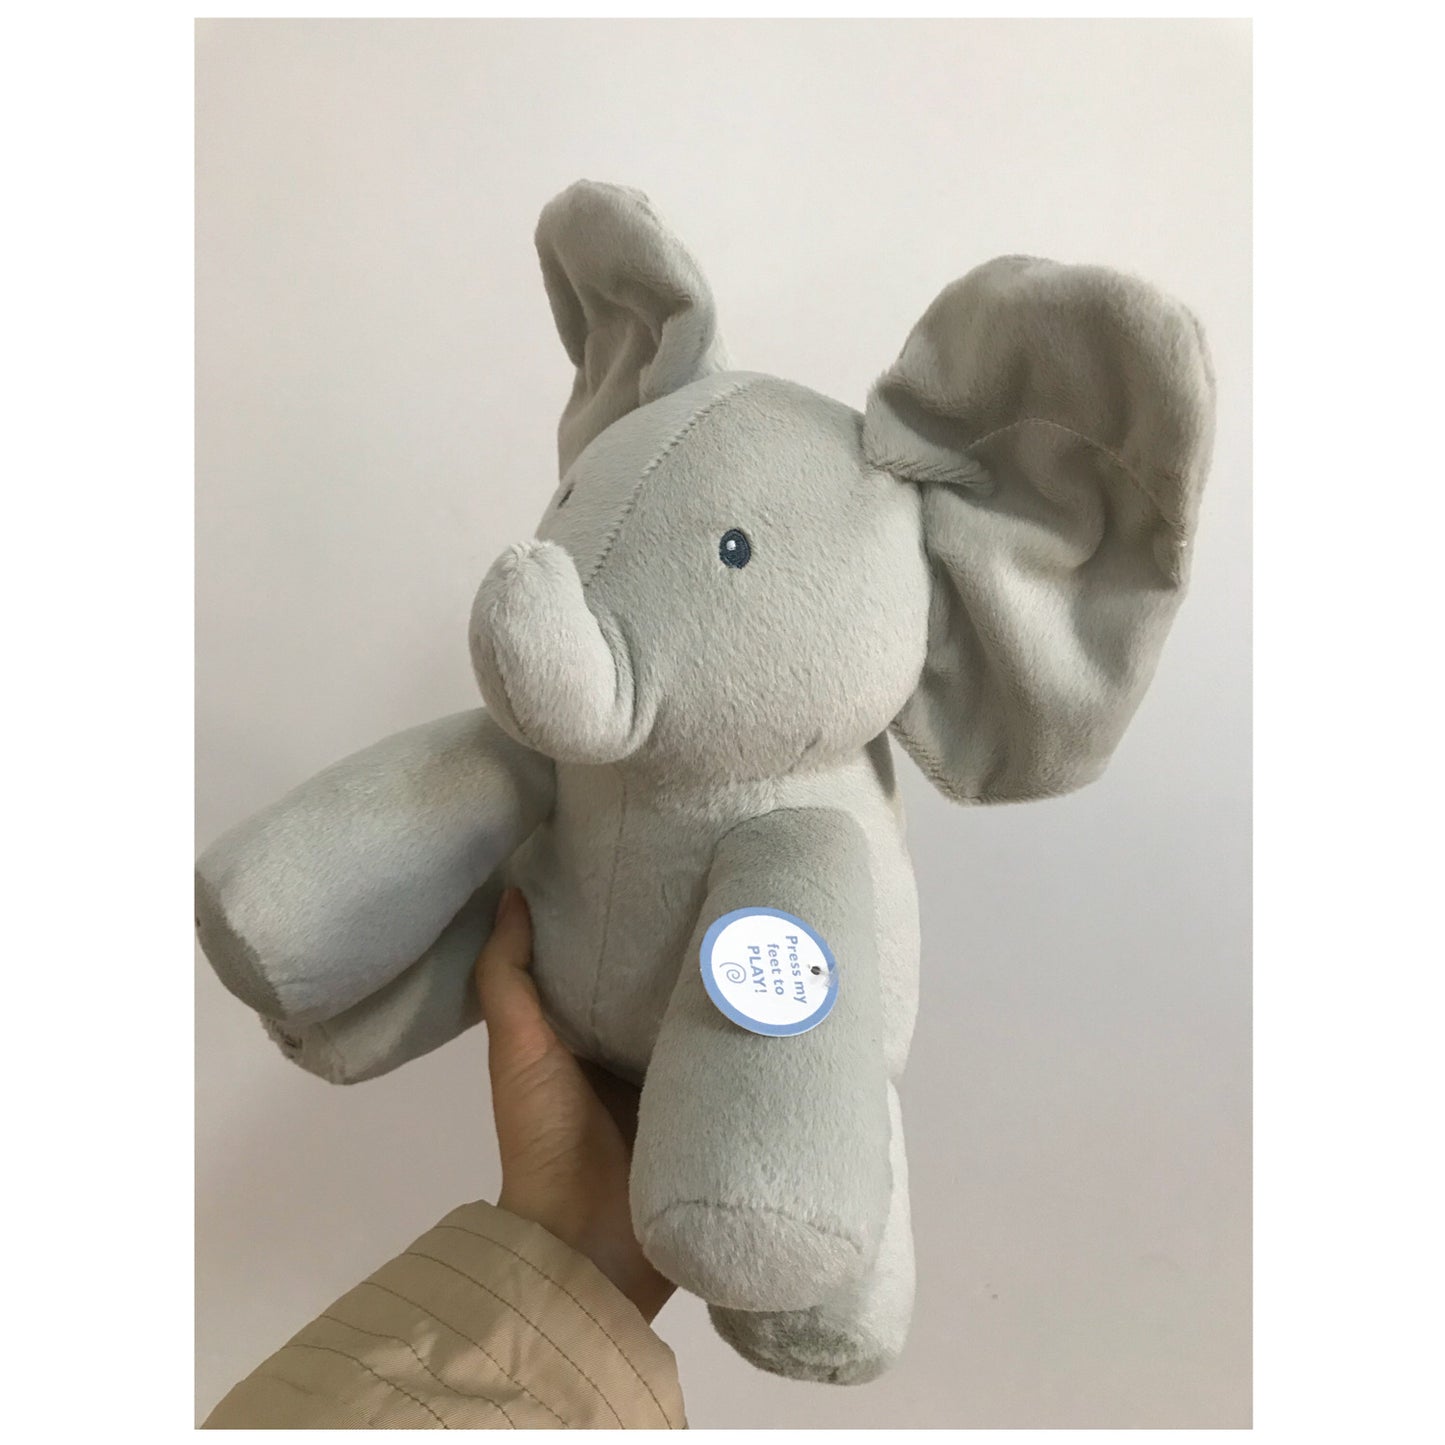 Animated Singing Peek A Boo Plush Toy - Grey Elephant